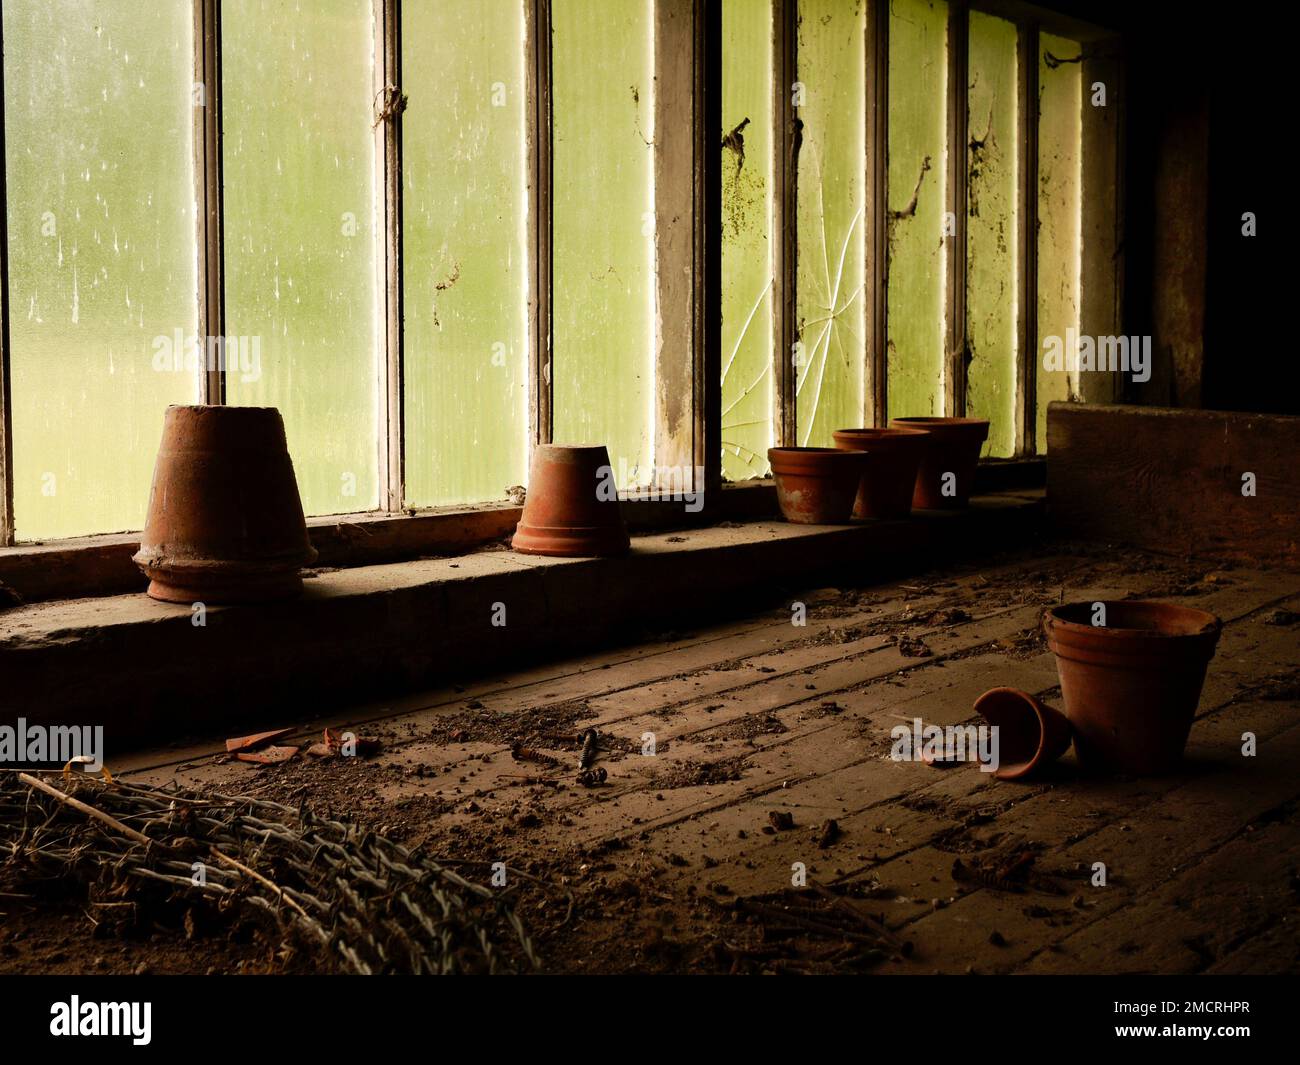 Une image d'ambiance de pots de terre cuite poussiéreux dans un ancien hangar de pot abandonné avec des fenêtres cassées Banque D'Images